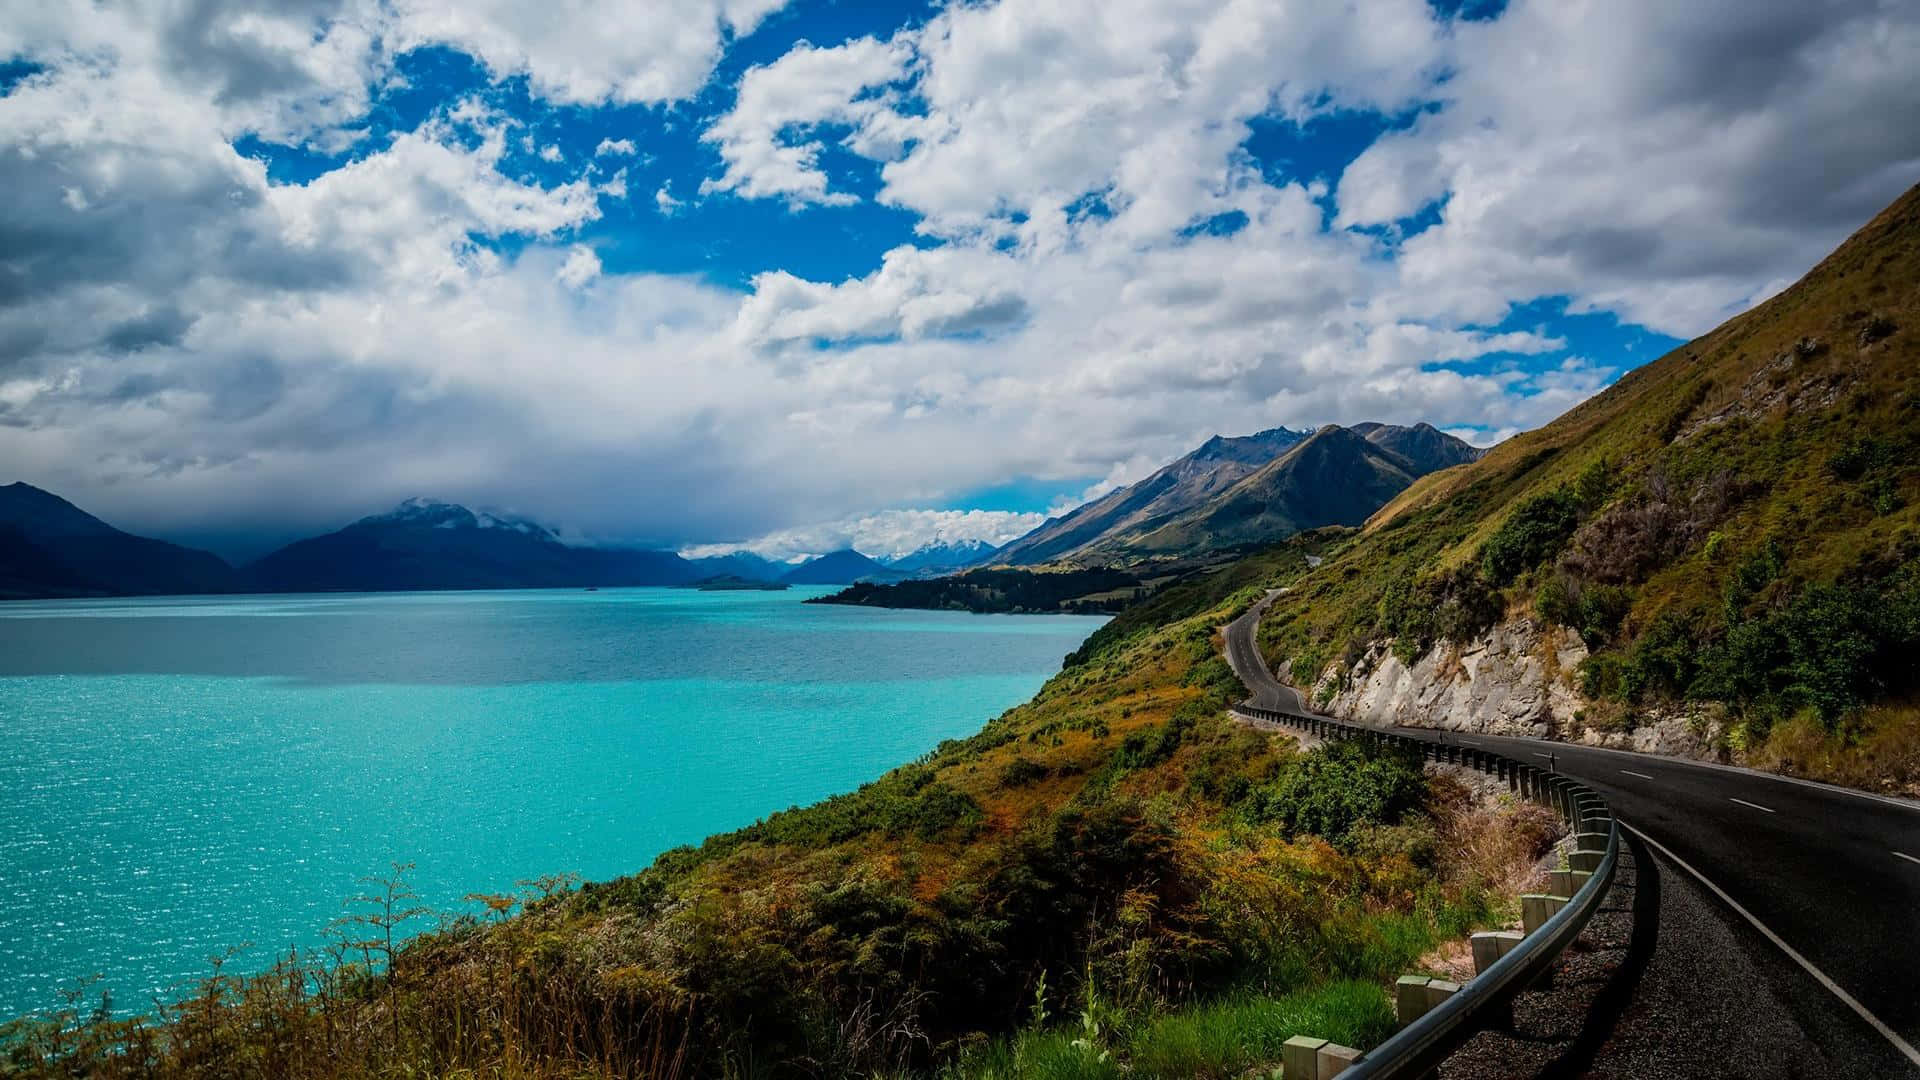 Kiwi culture blooms amid the splendor of New Zealand